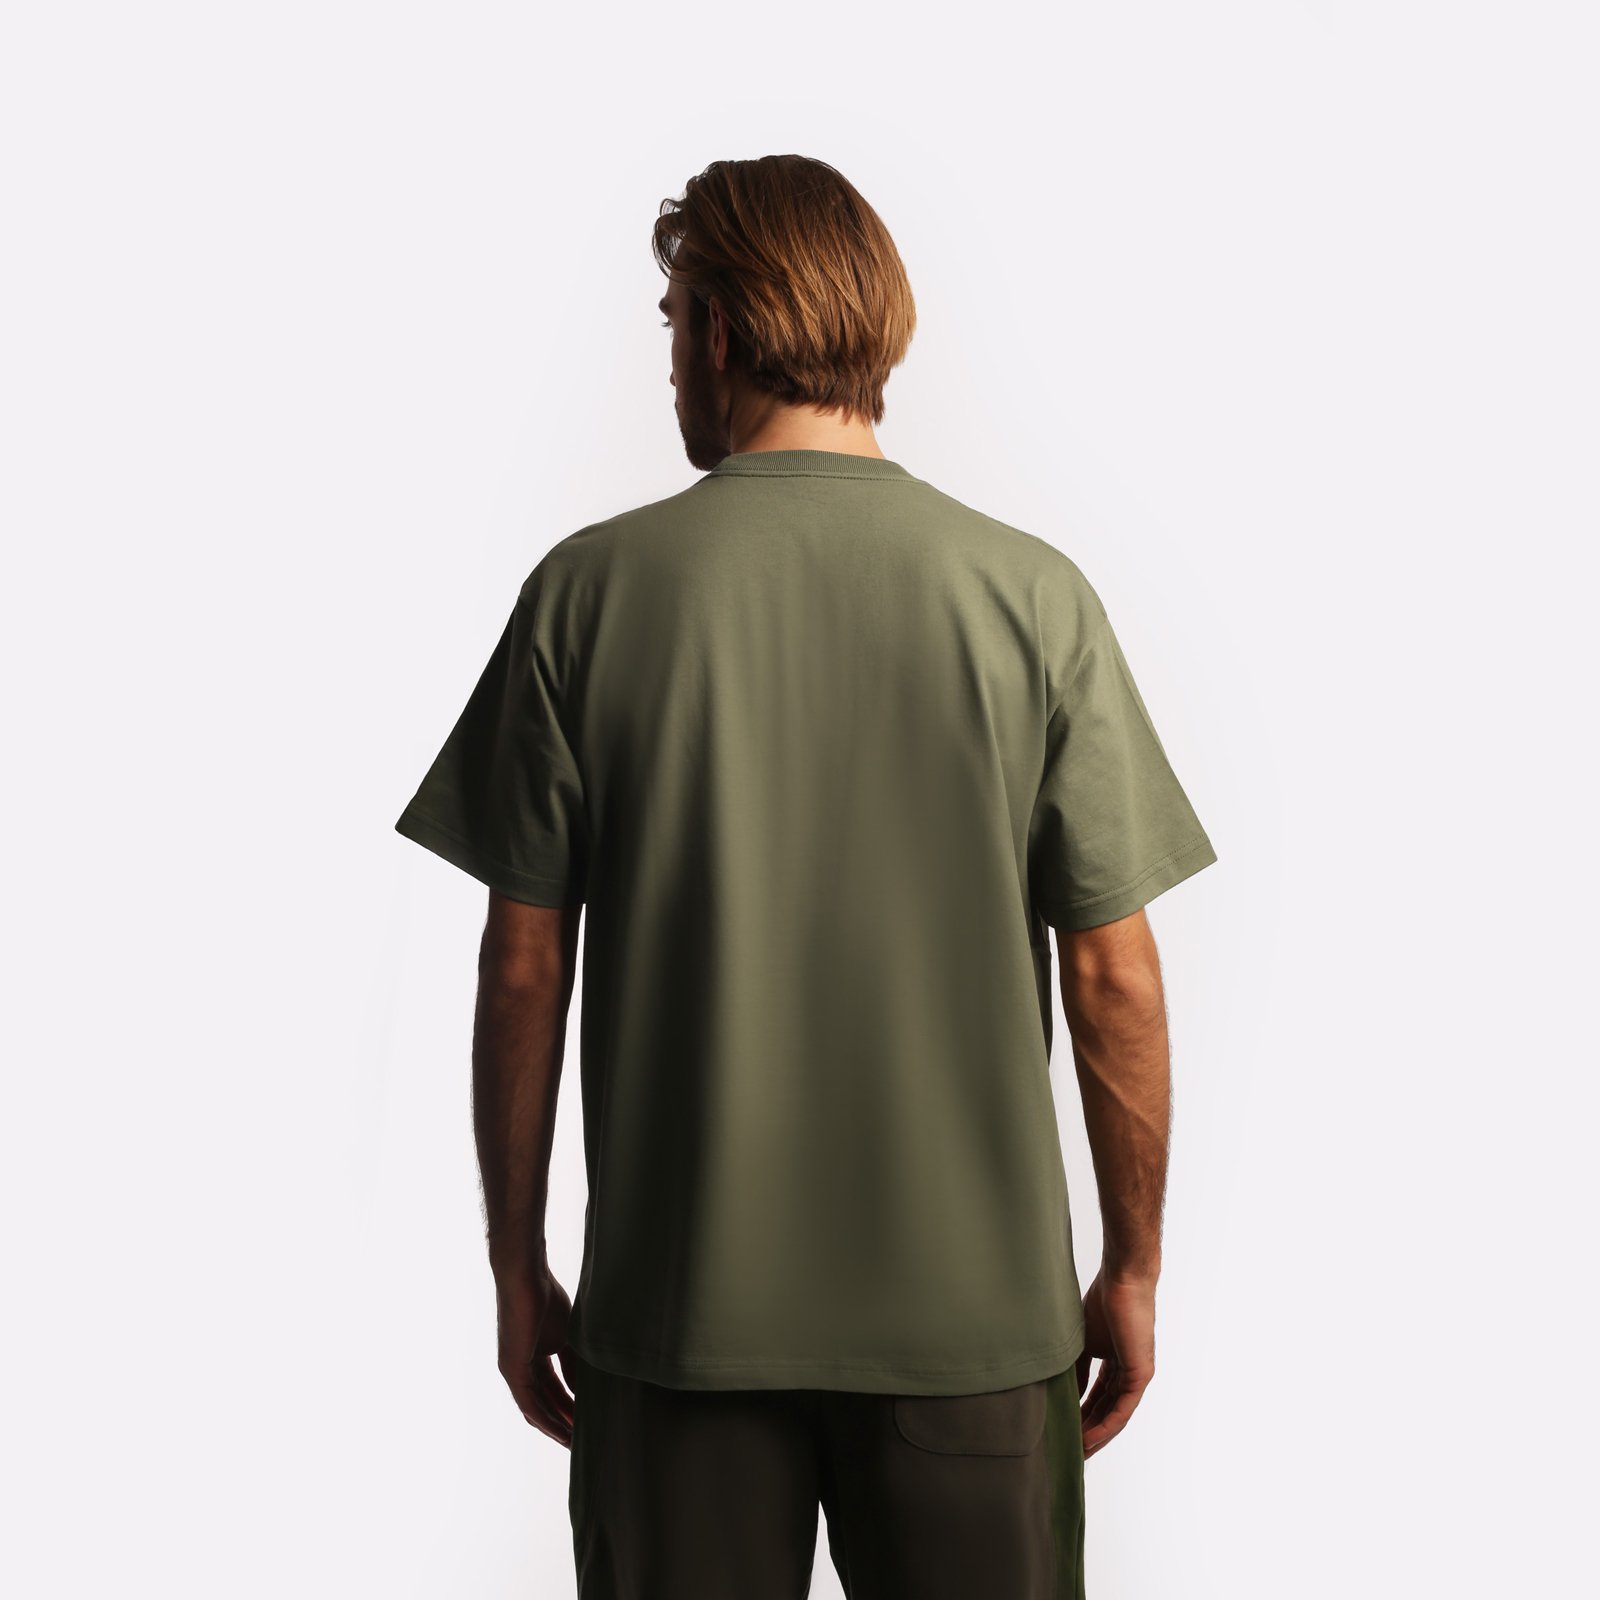 мужская футболка Carhartt WIP S/S Warm Embrace T-Shirt  (I032390-green) I032390-green - цена, описание, фото 2